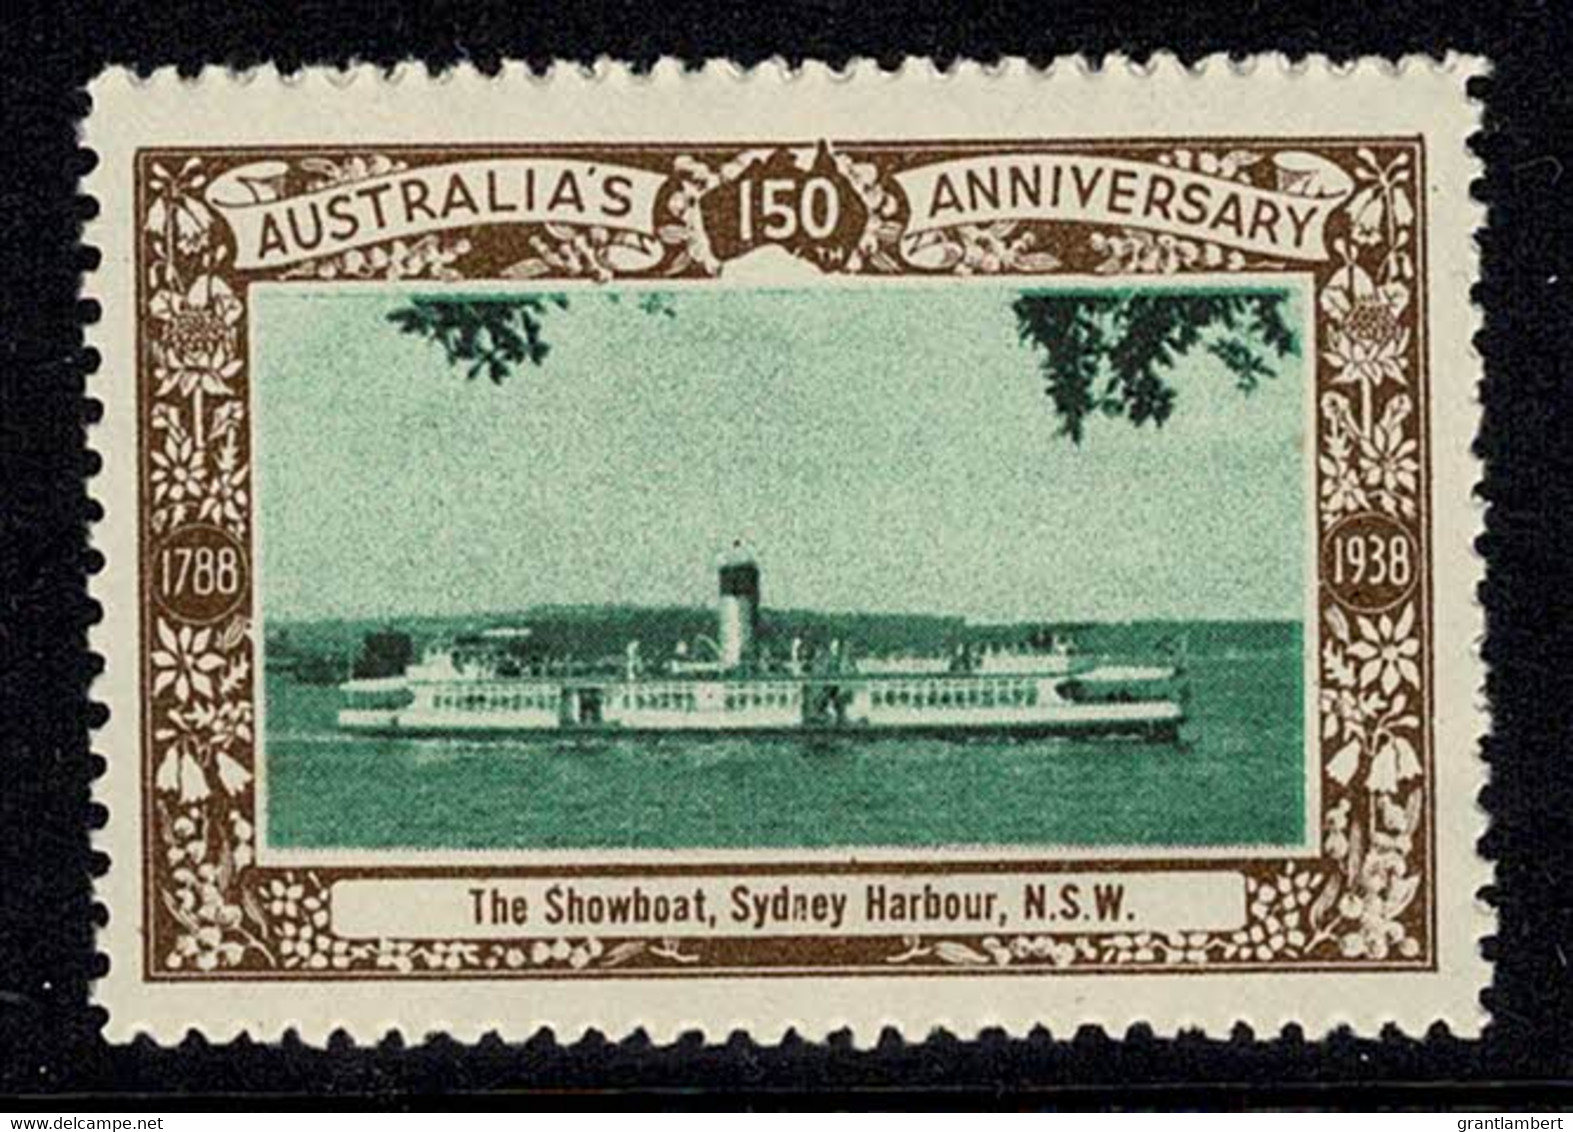 Australia 1938 The Showboat, Sydney Harbour - NSW 150th Anniversary Cinderella MNH - Werbemarken, Vignetten